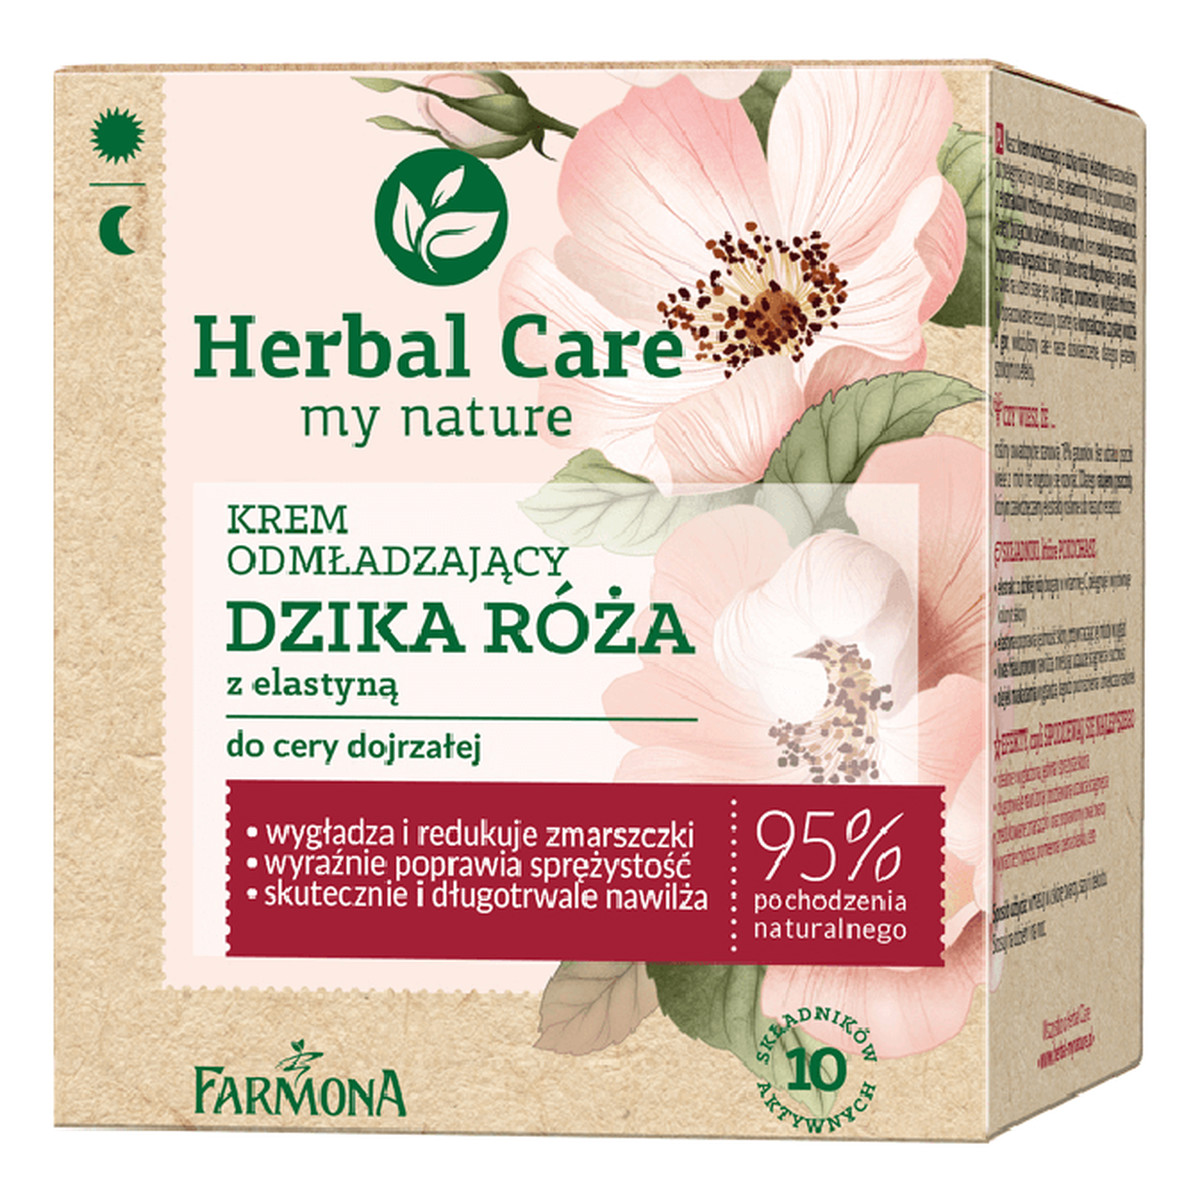 Farmona Herbal Care my nature Krem Odmładzający Dzika Róża 50ml